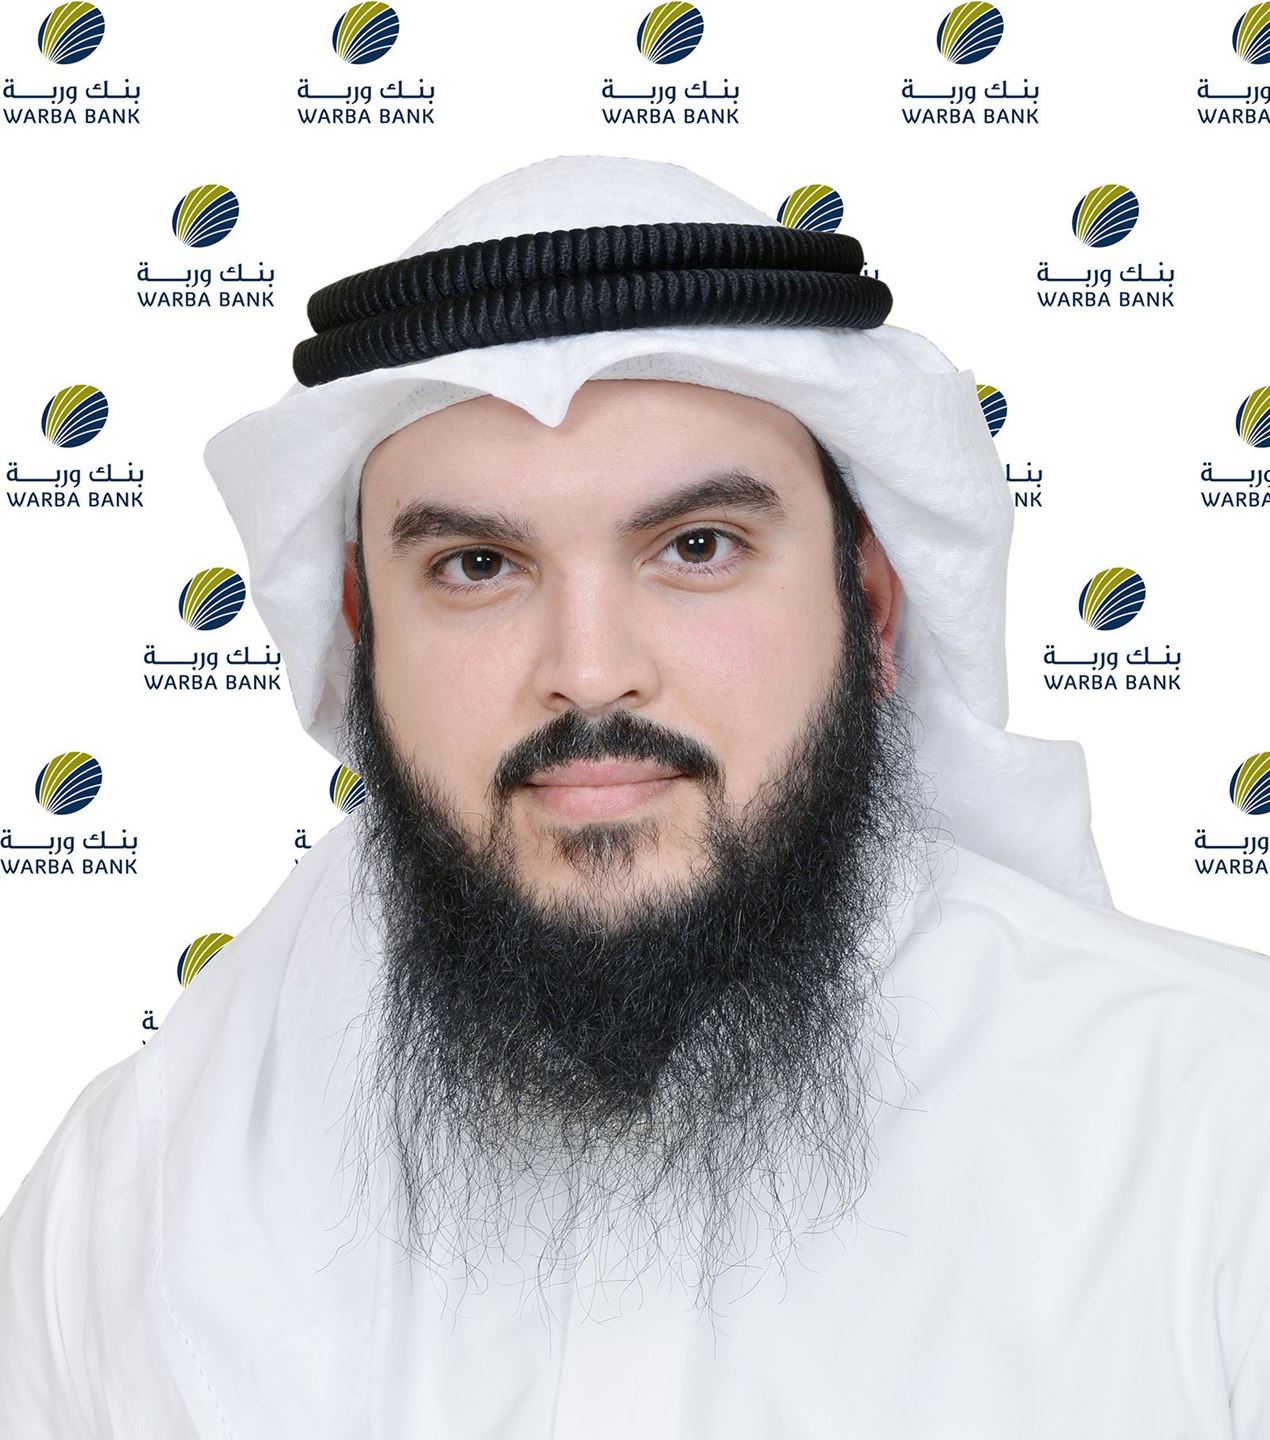 ثويني خالد الثويني، نائب رئيس المجموعة المصرفية للاستثمار في بنك وربة